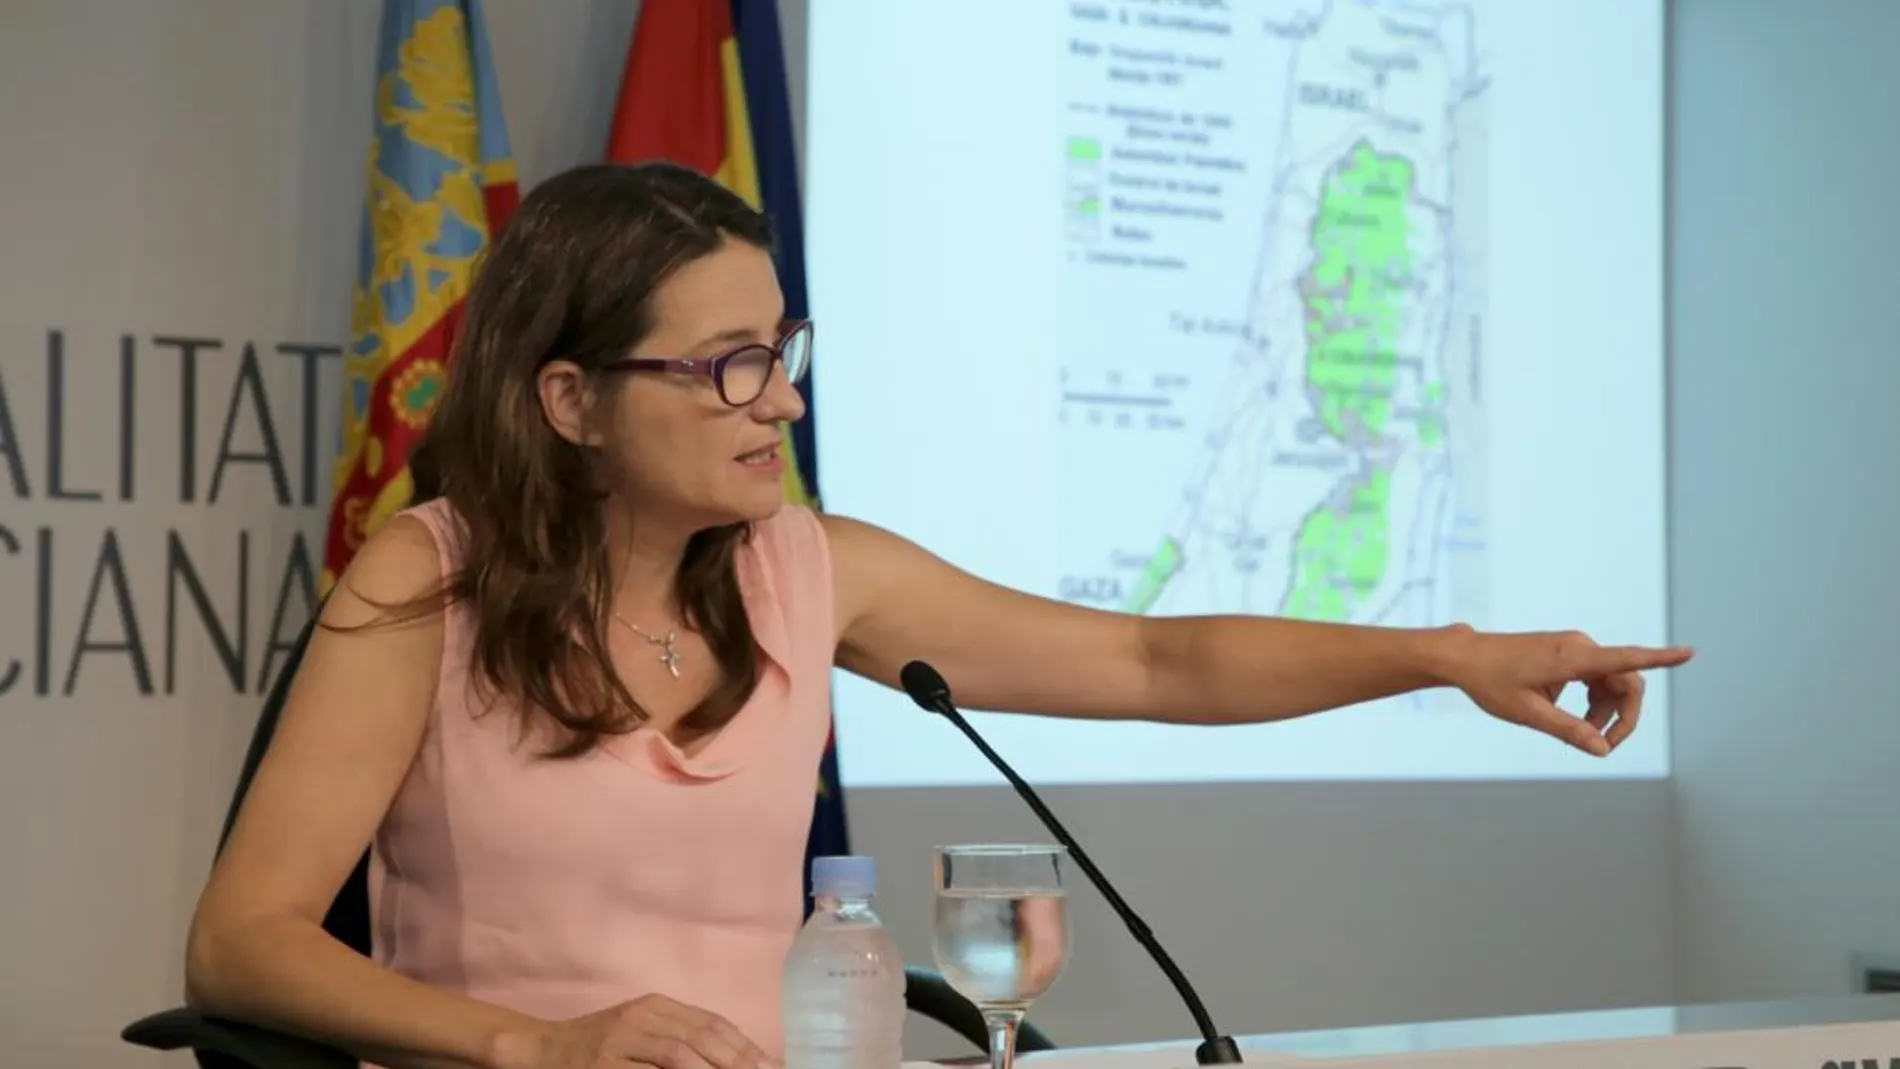 La vicepresidenta Mónica Oltra compareció ante los medios para dar detalles de su viaje a Palestina